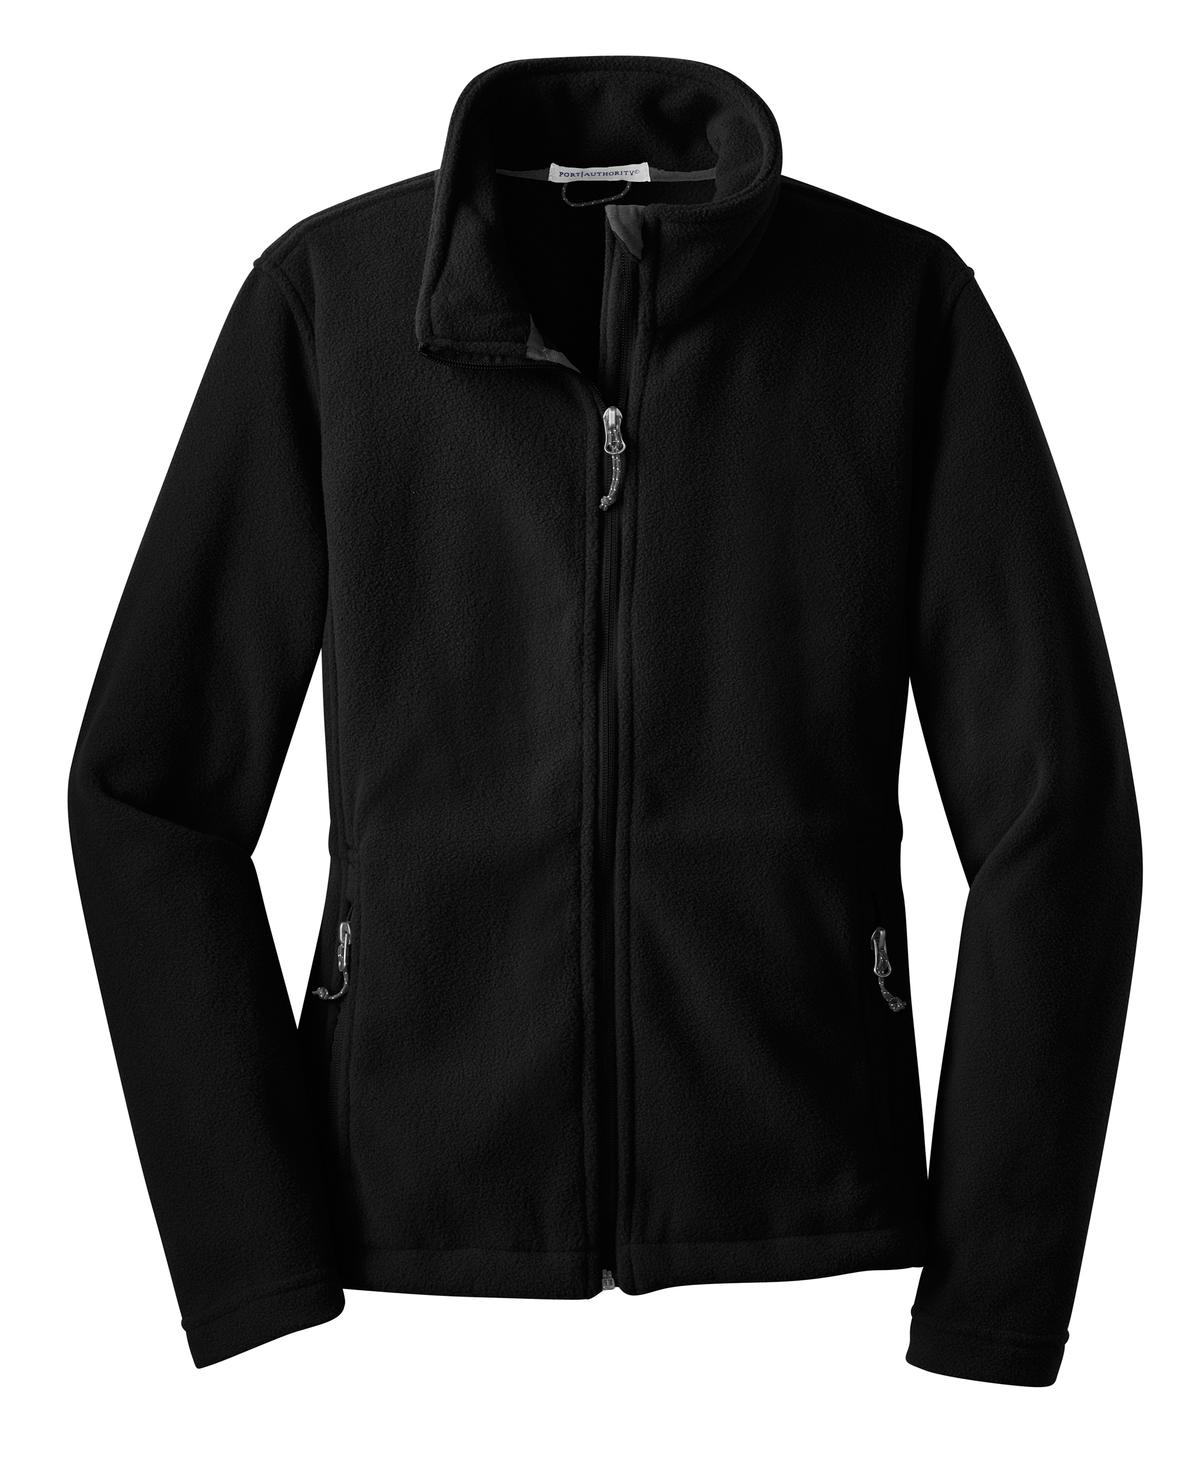 Port Authority ® Ladies Value Fleece Jacket